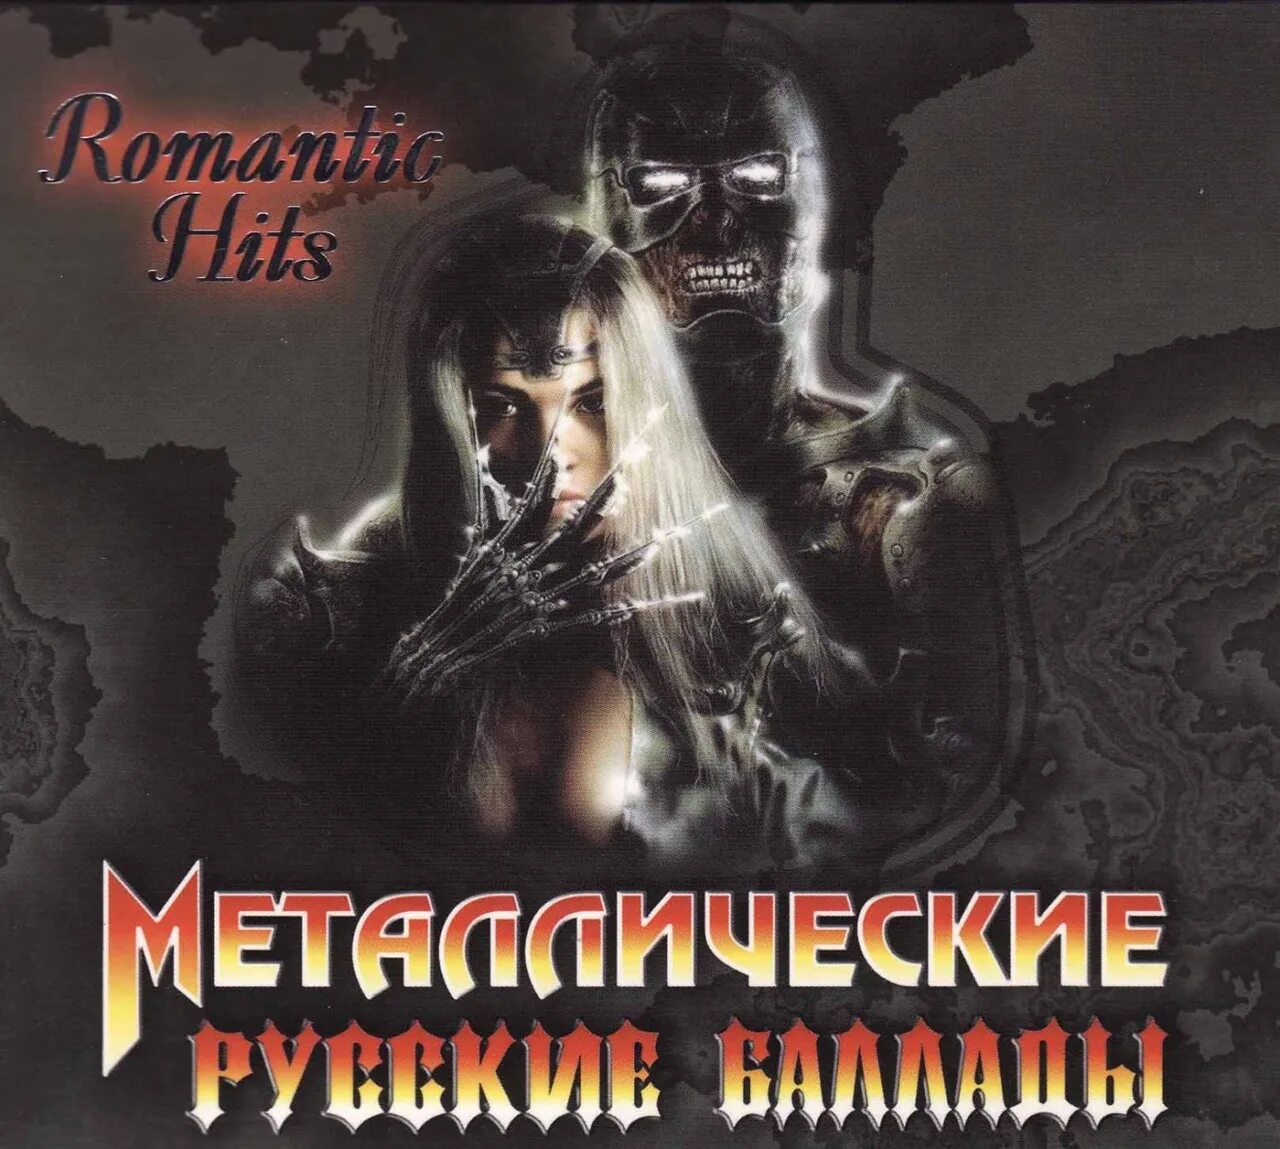 Сборник лучших баллад. Метал баллады Metal Ballads. Русские металлические баллады. Болларды металлические. Русские металлические баллады 3.